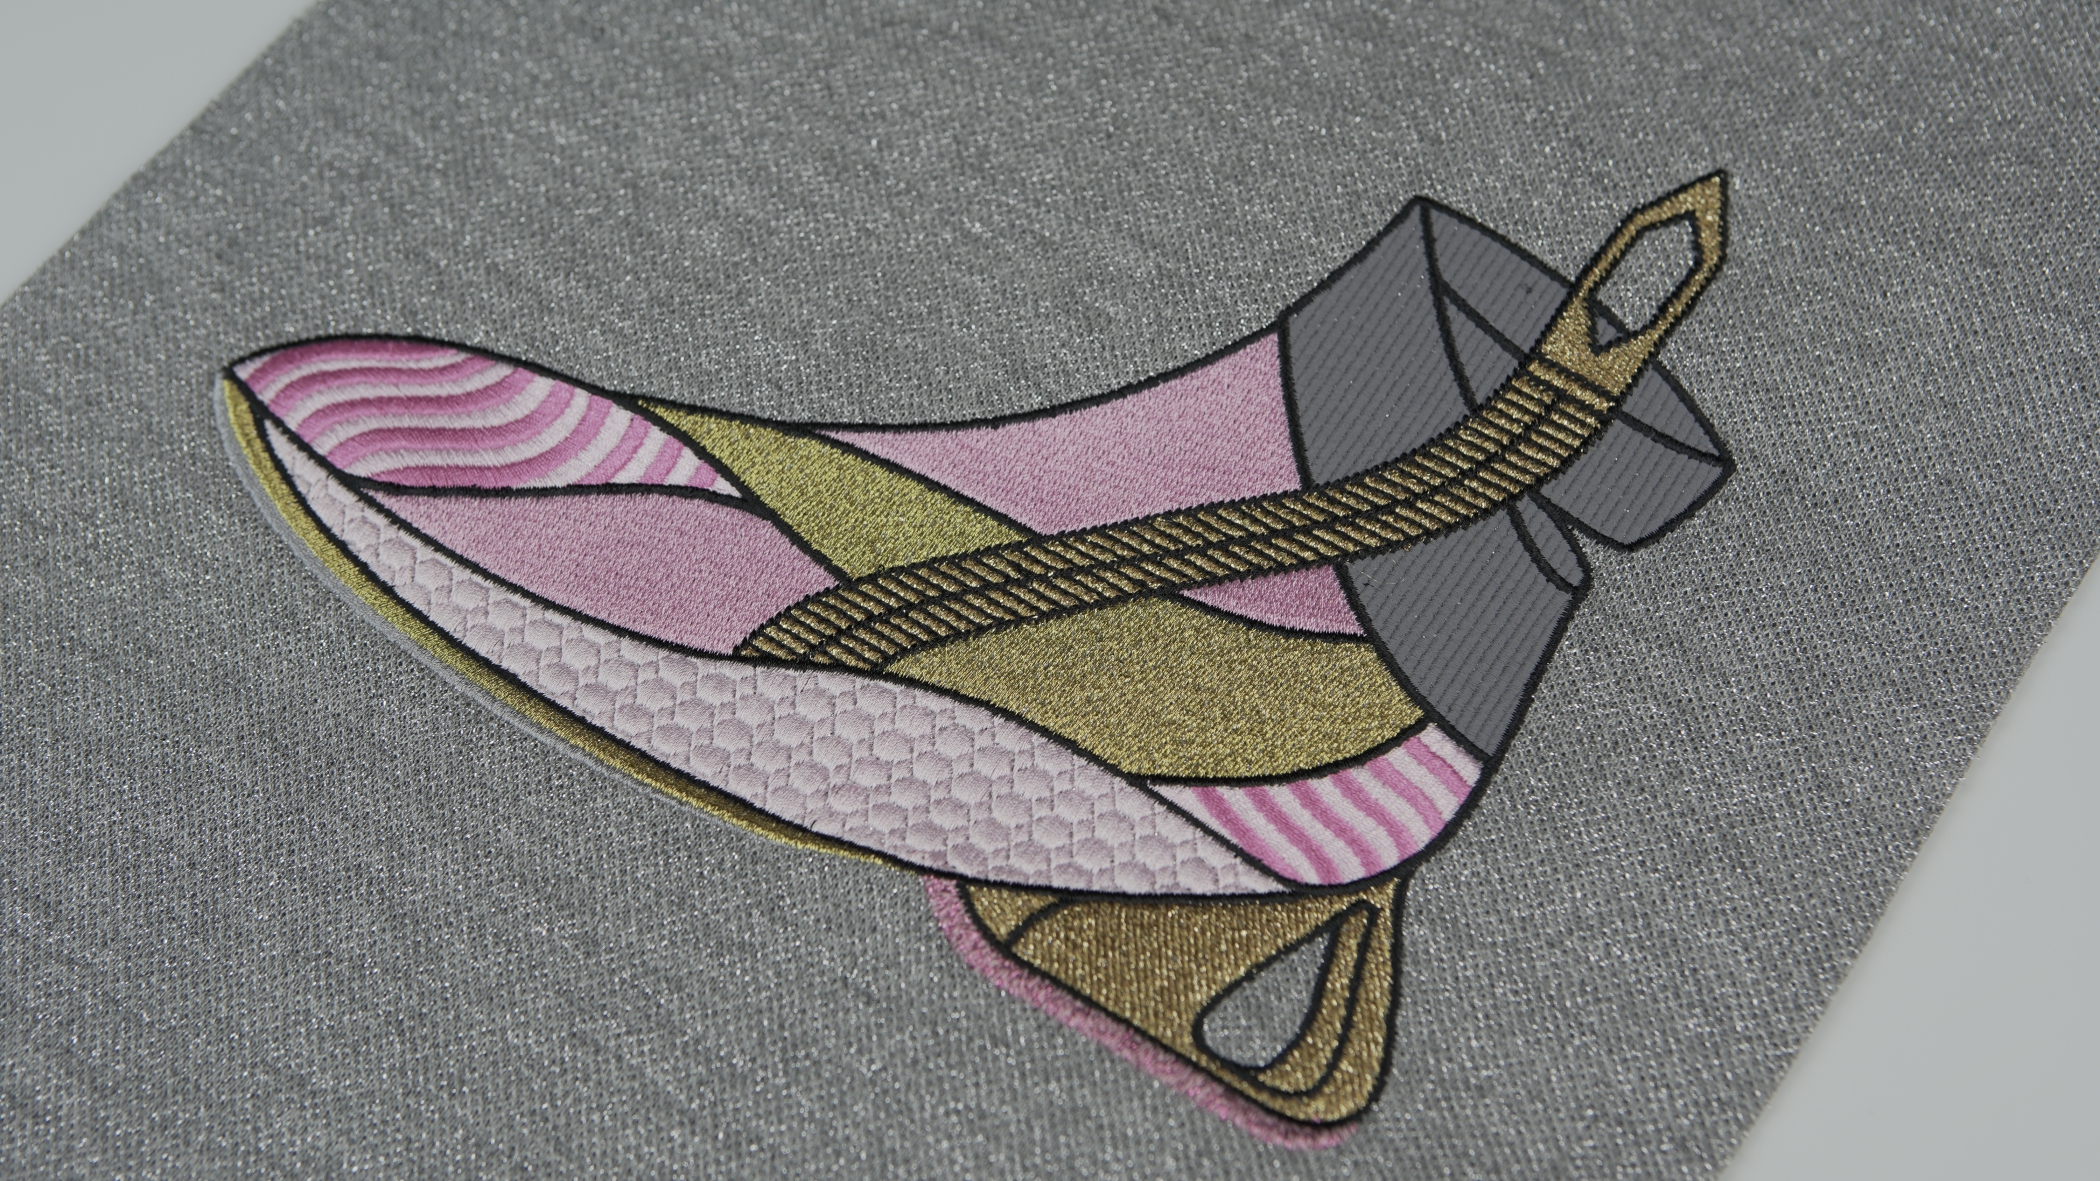 Desenho de uma bota em tons de rosa, dourado e cinza, utilizando a técnica de bordado matizado com efeitos